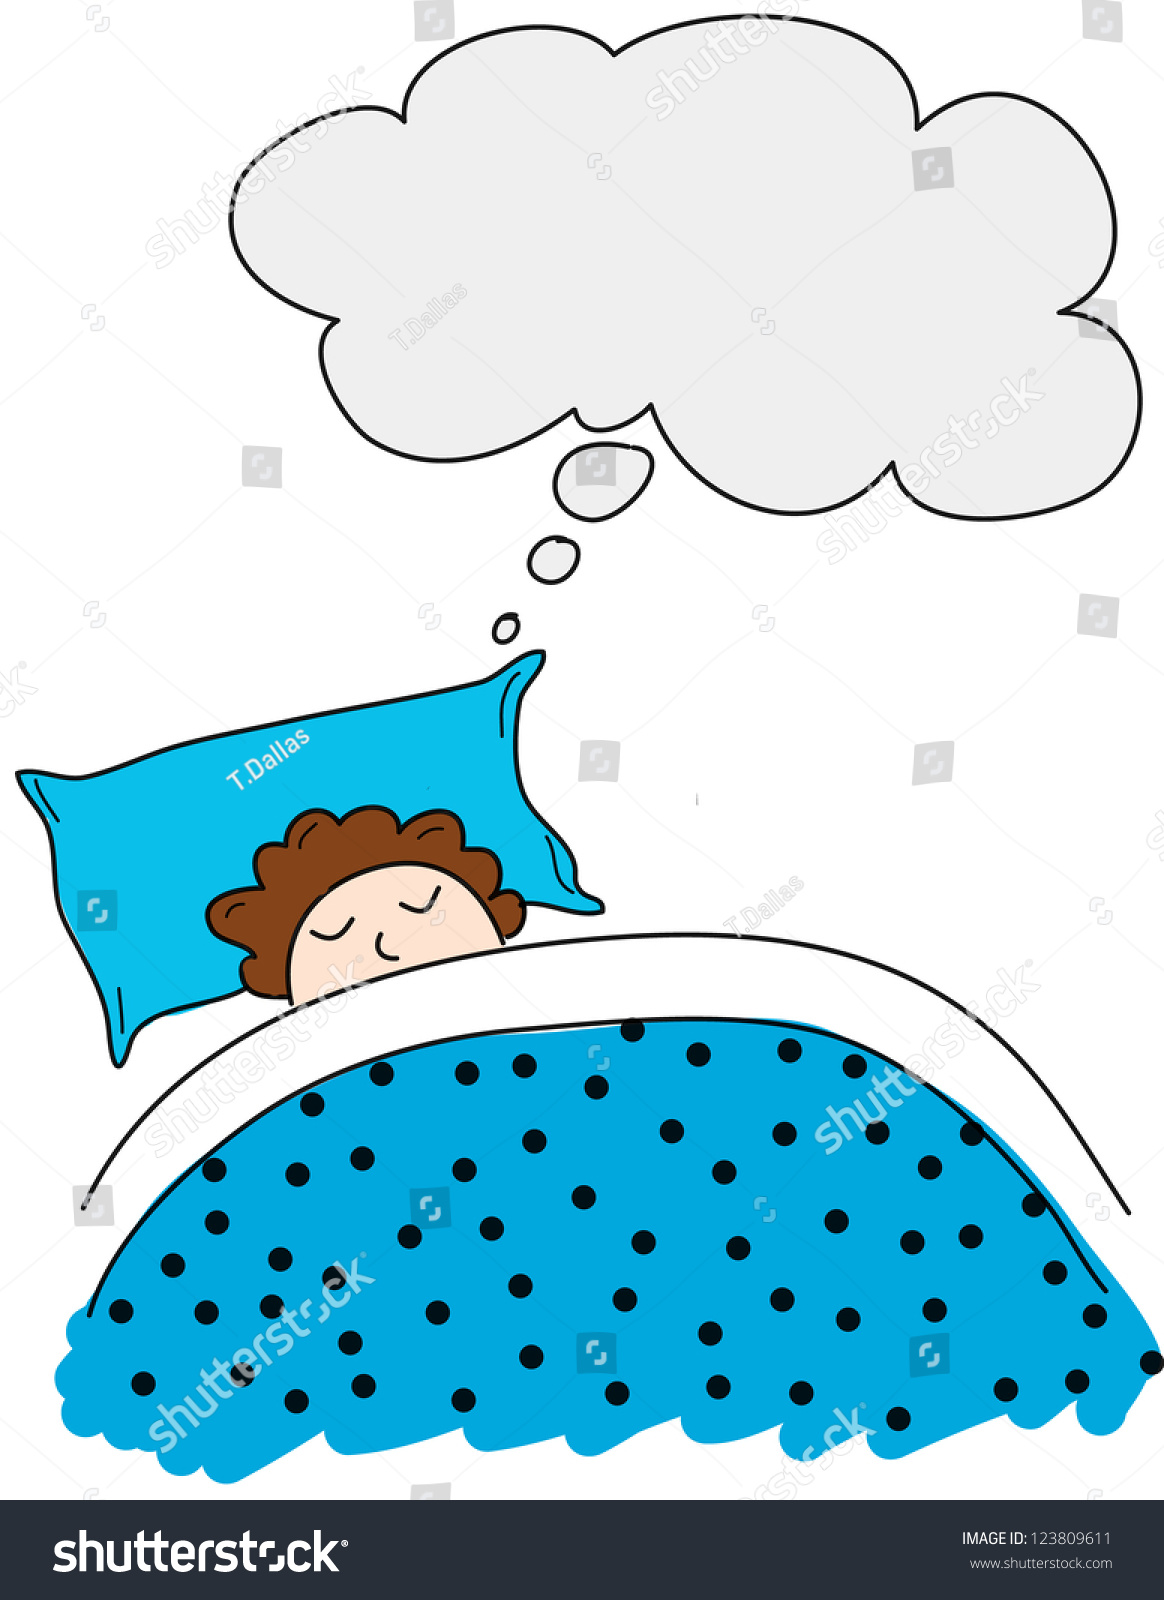 Boy Has A Dream, Vector Illustration Cartoon - 123809611 : Shutterstock